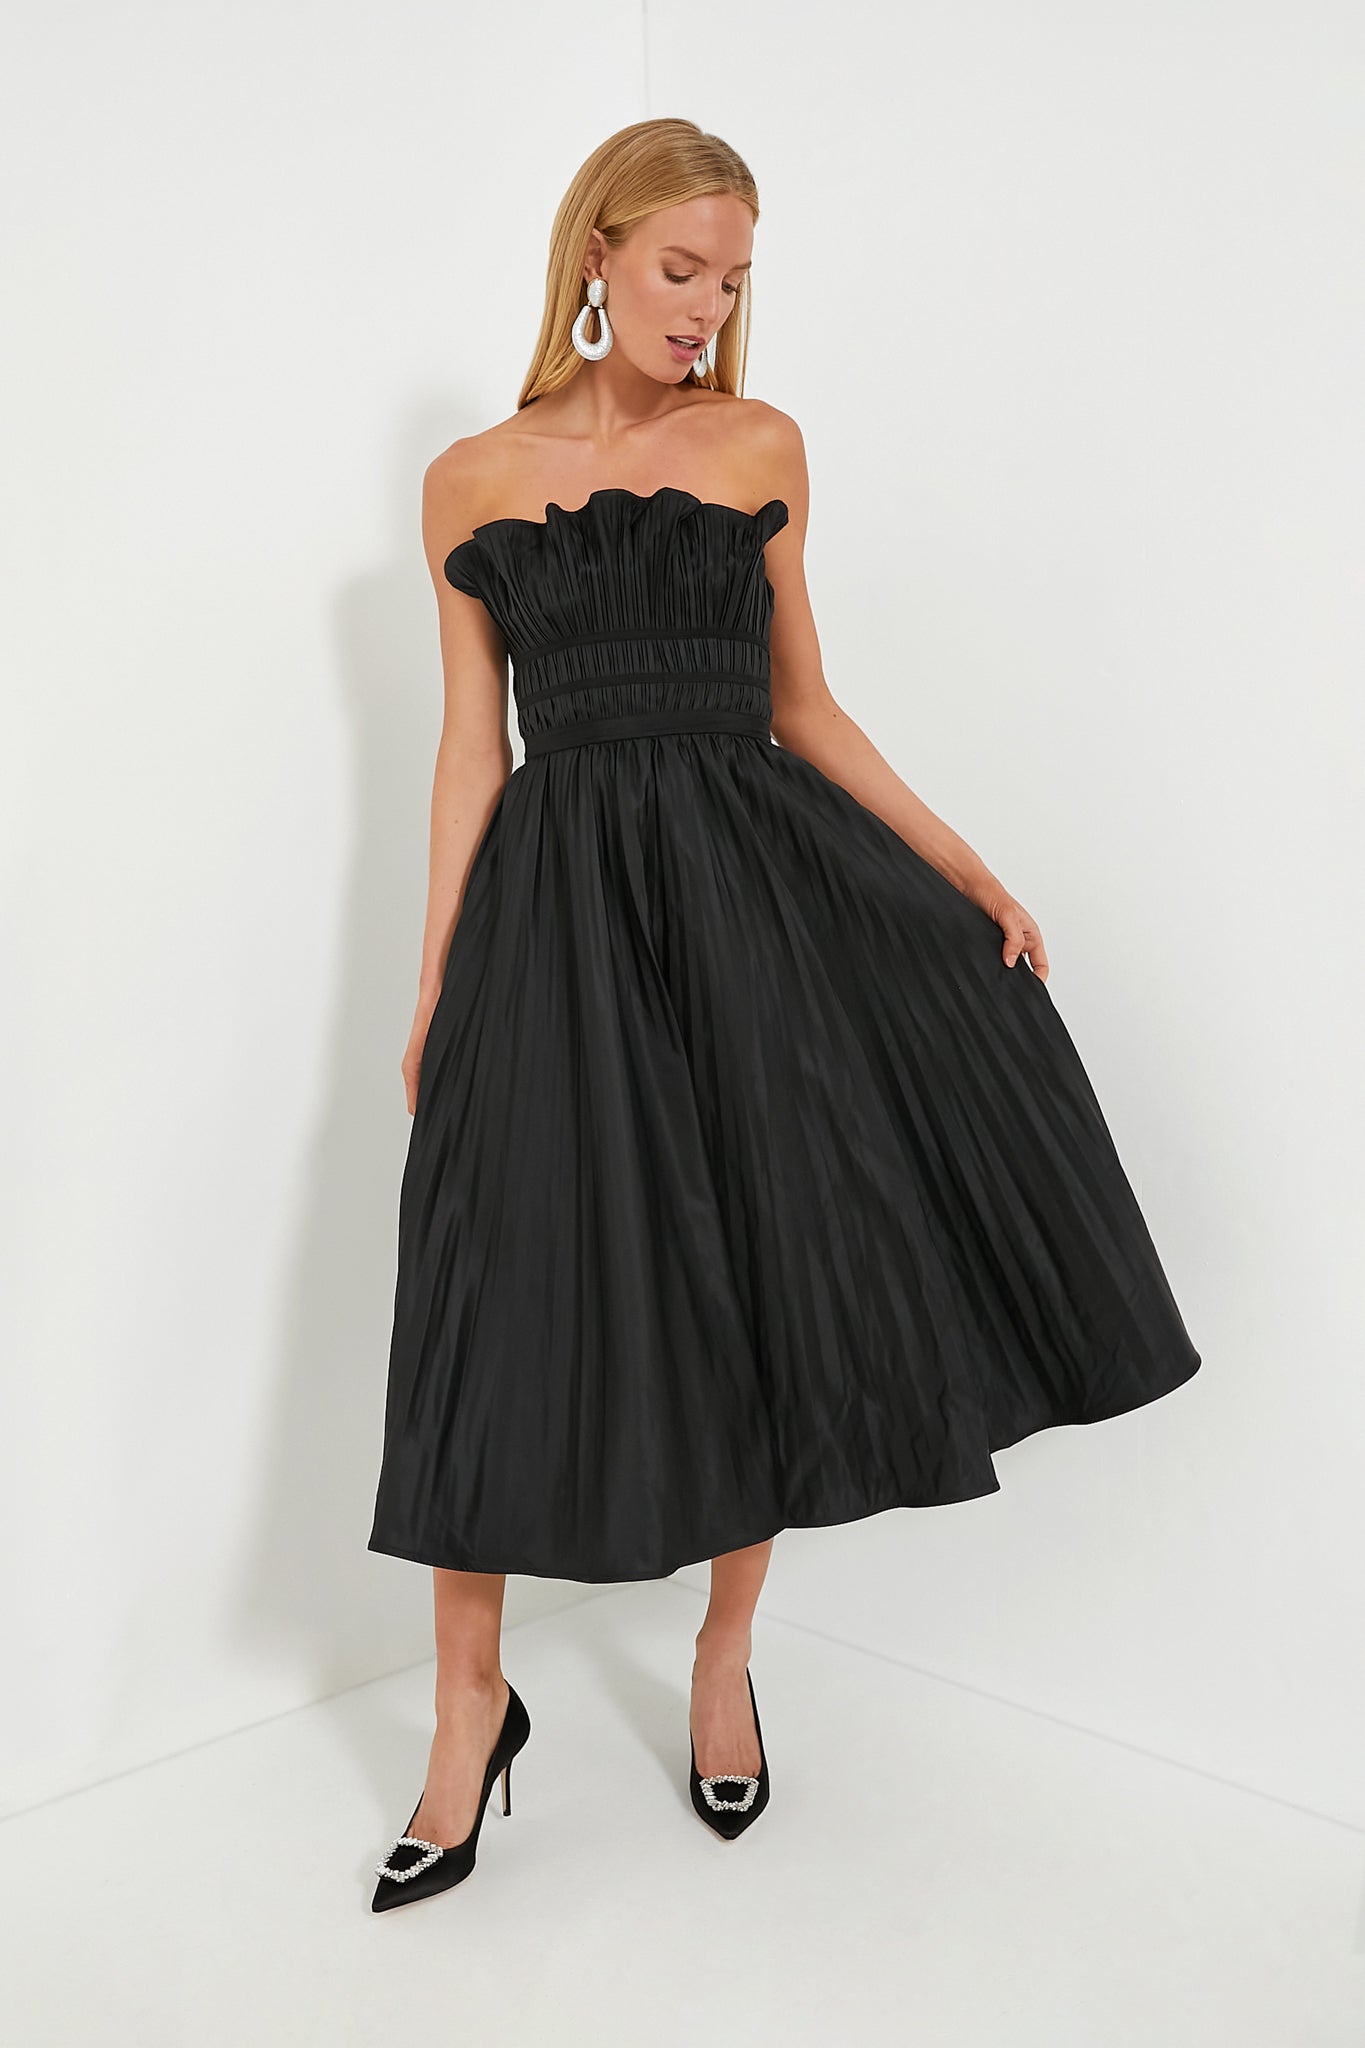 Black Pleated Maxi Dress